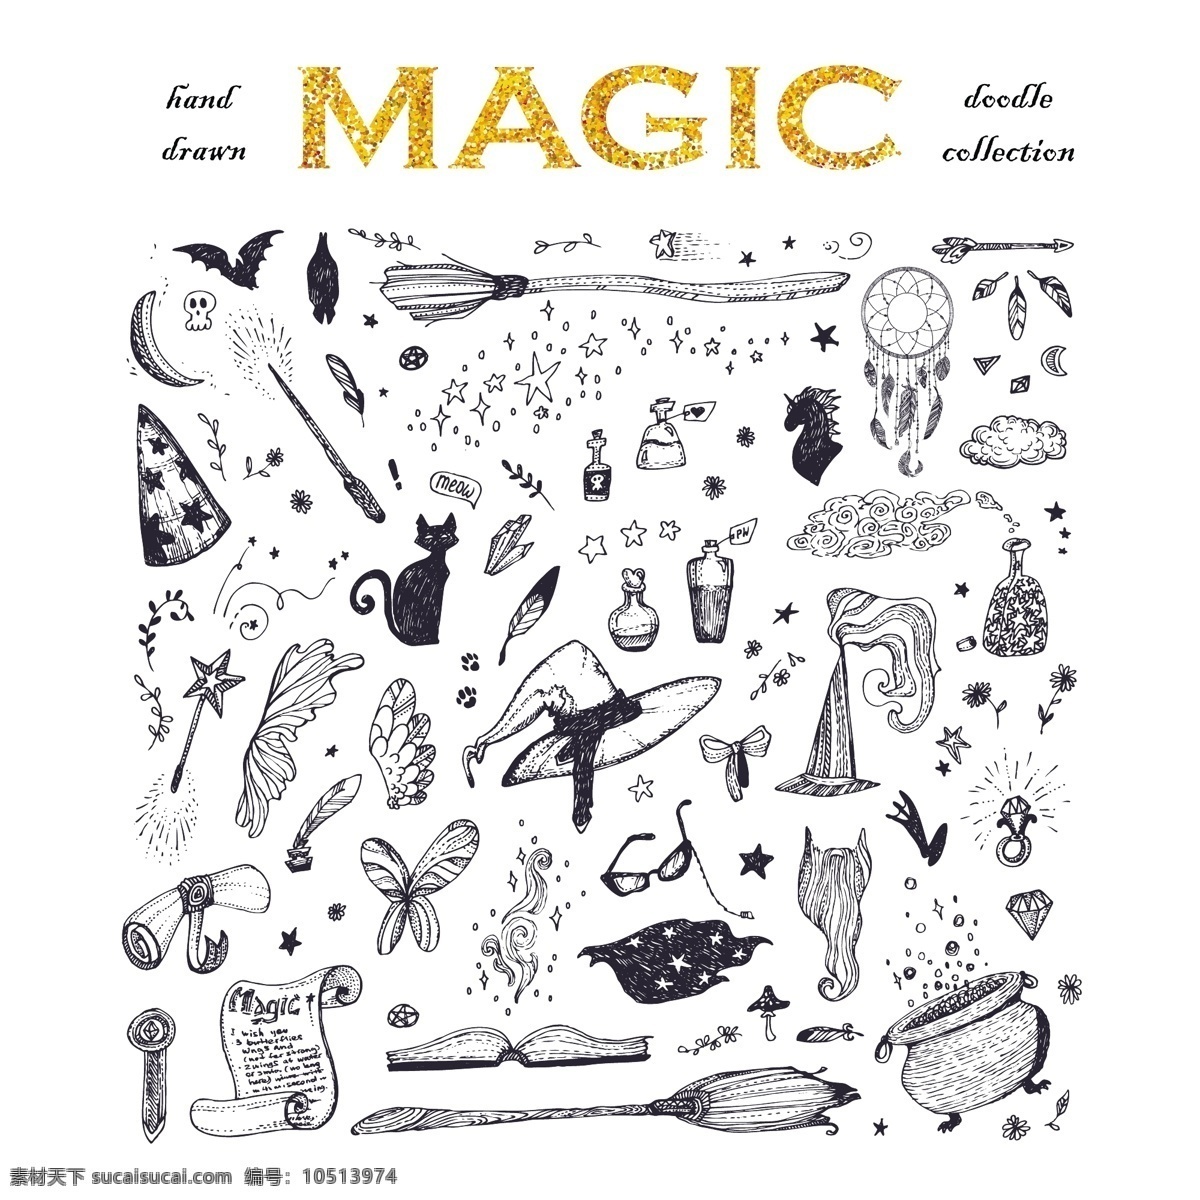 魔法 元素 集合 手 猫 手绘 月亮 帽子 绘画 魔术 巫婆 包装 扫帚 收集 巫师 魔术棒 套装 魔杖